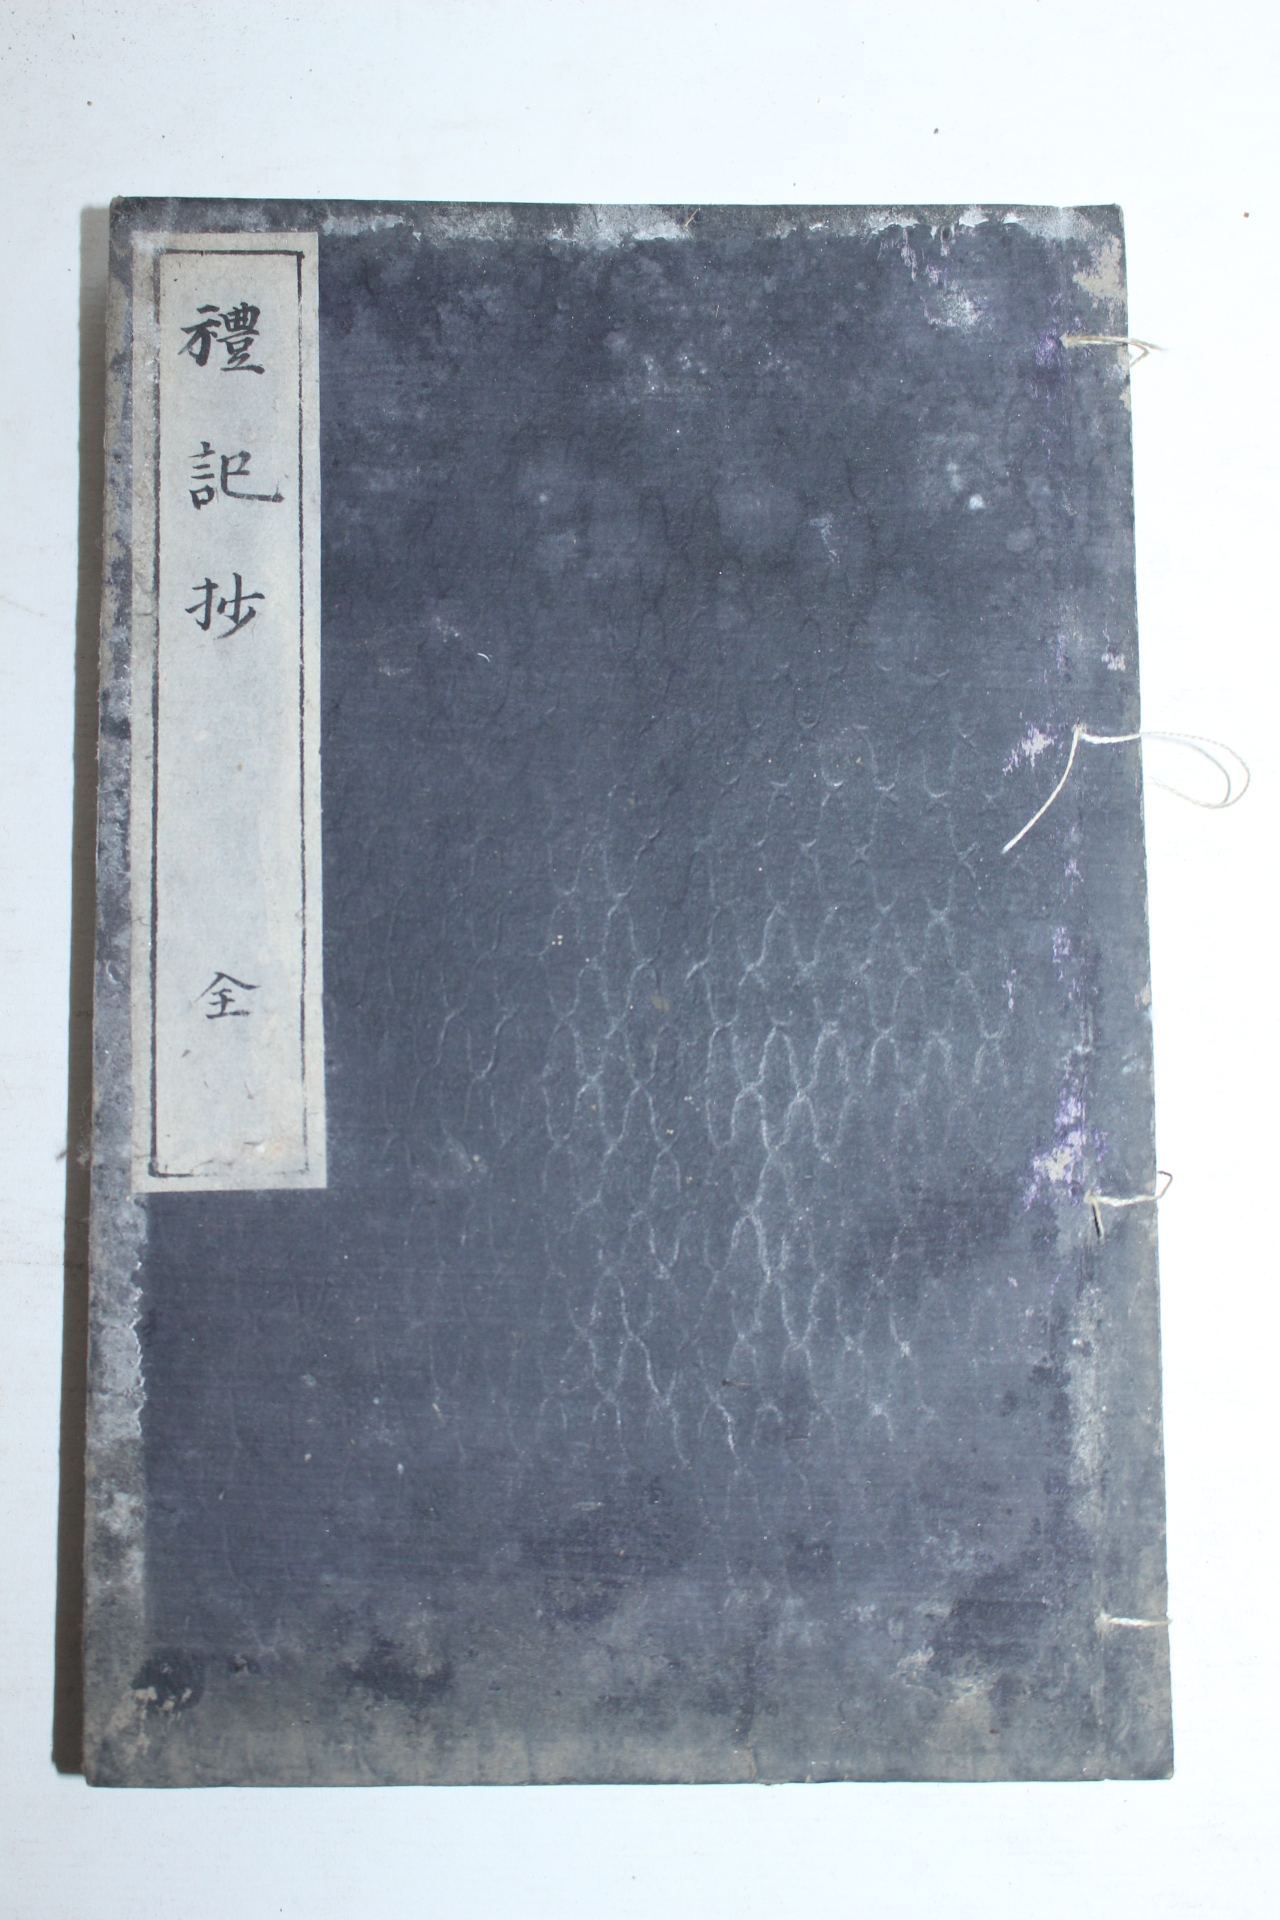 1900년(明治庚子年) 일본간행 예기초(禮記抄) 1책완질